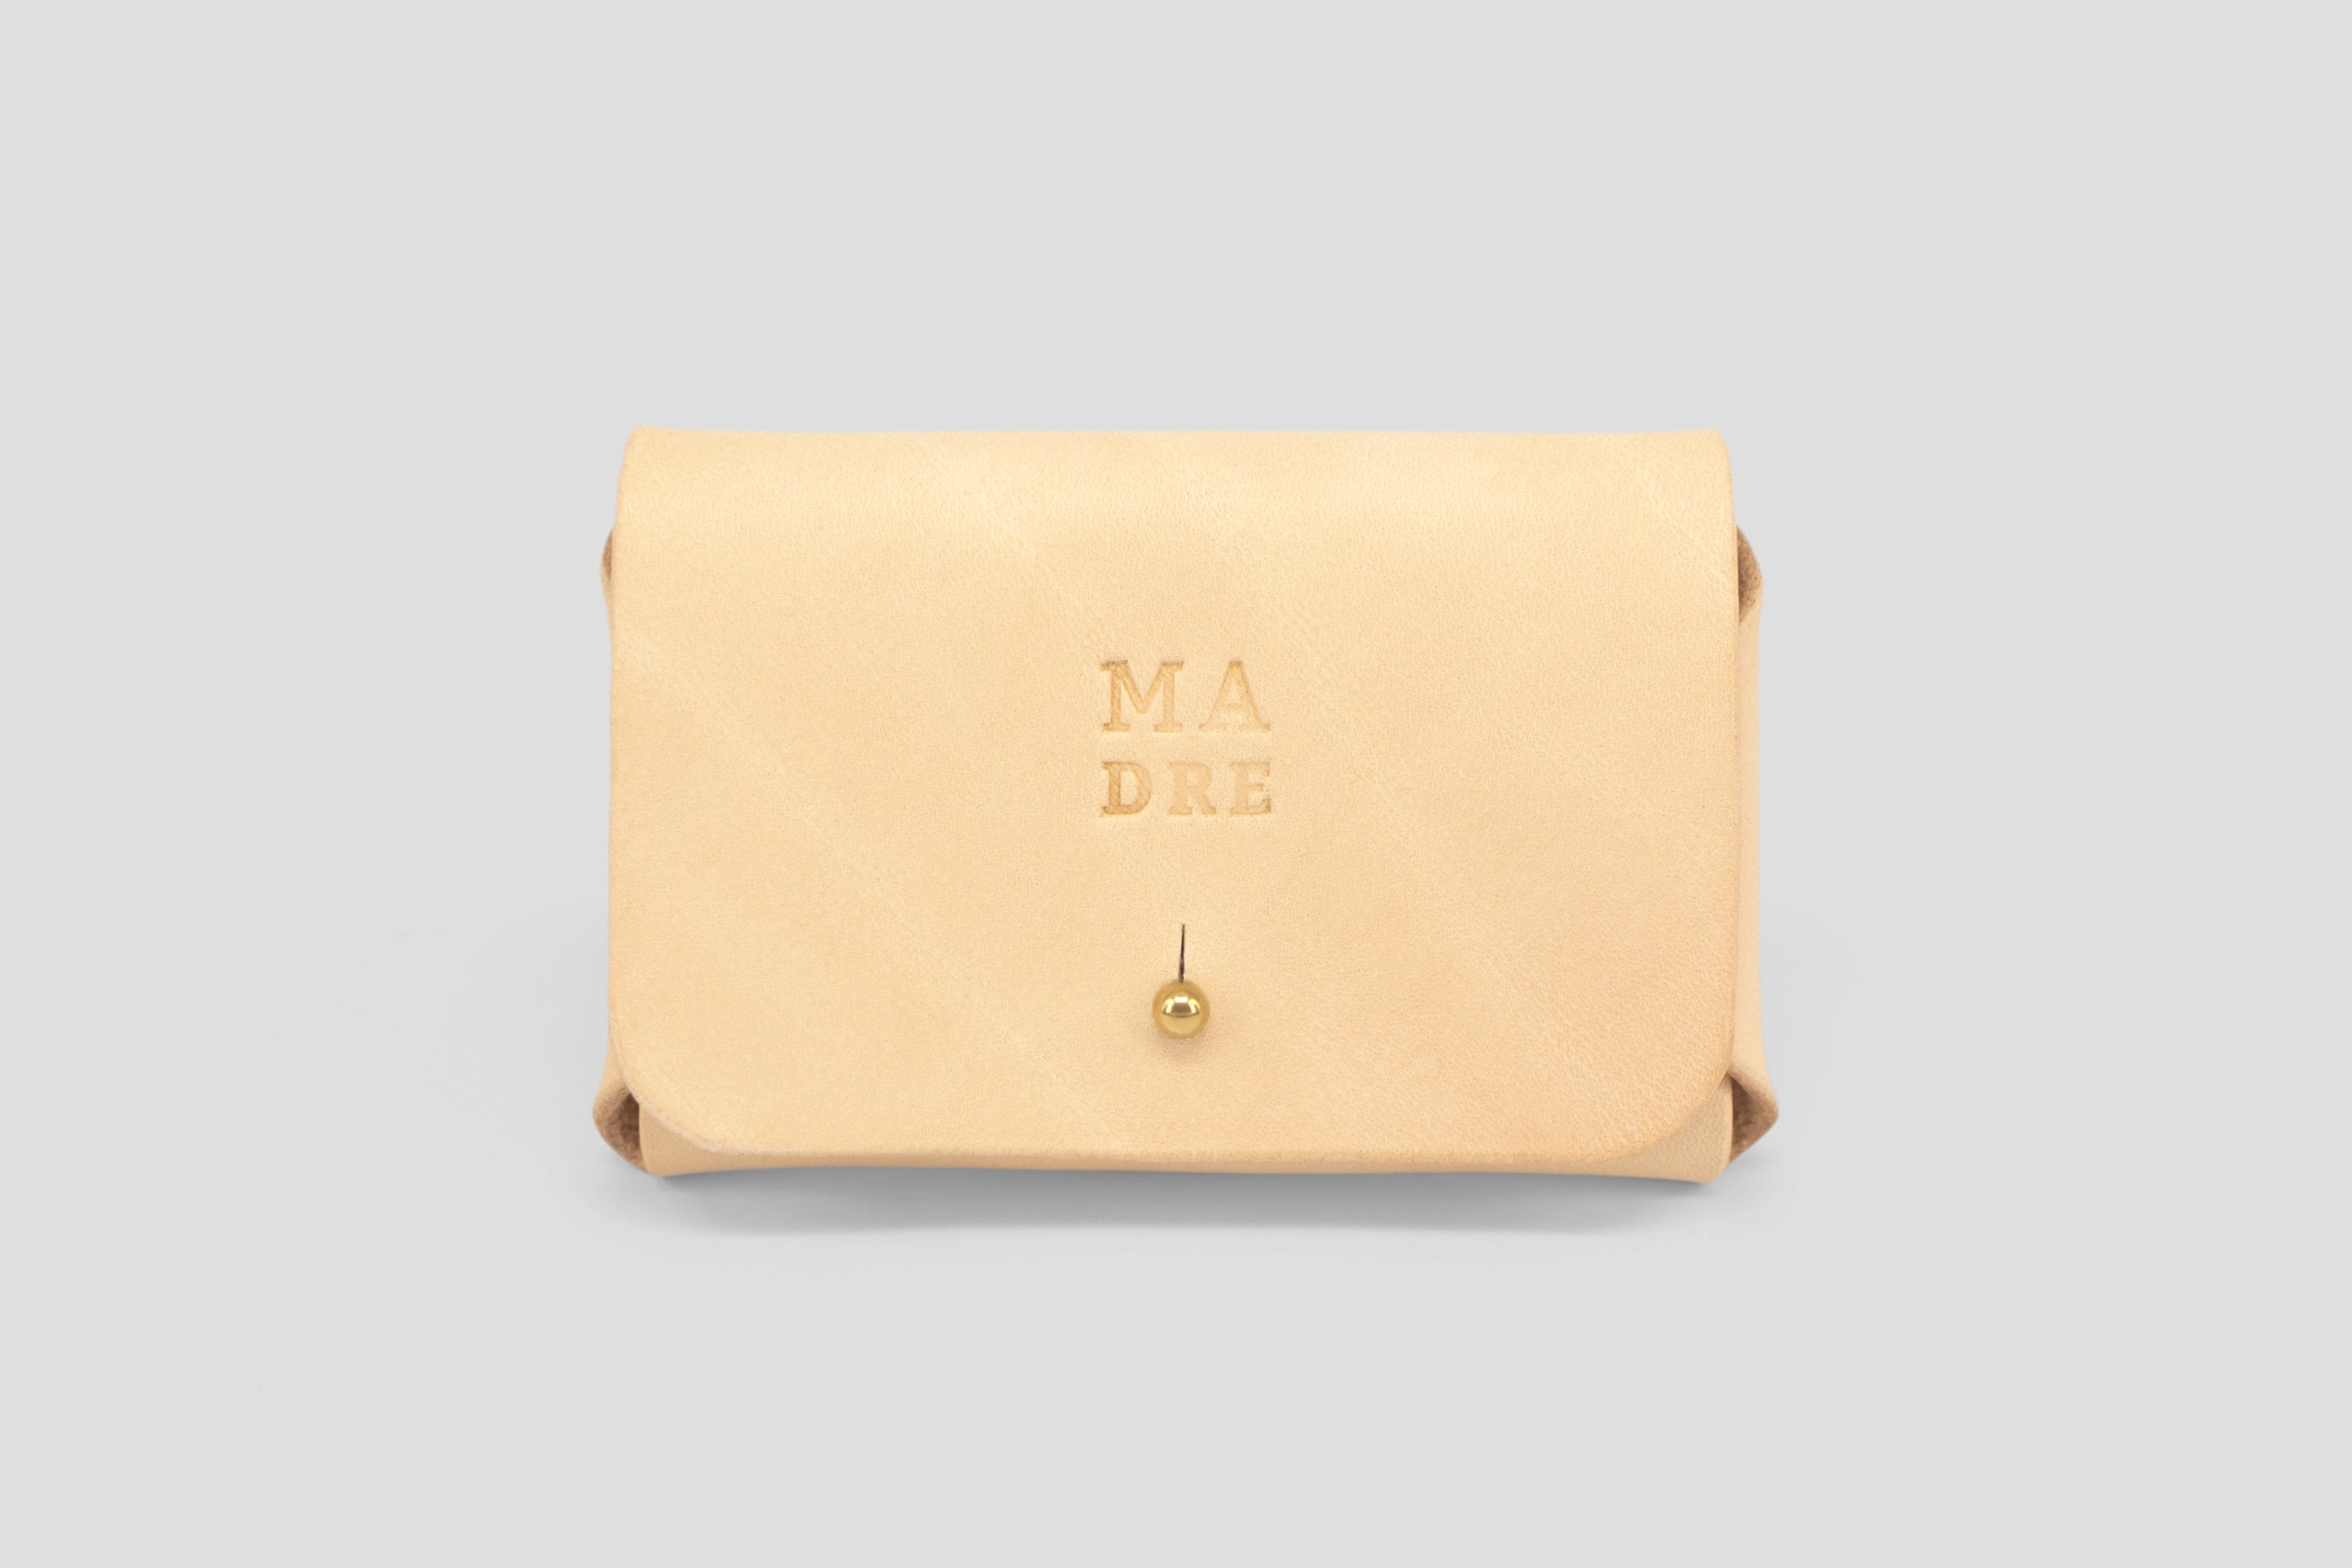 Leather wallet cardholder horizontal design Natural color minimalist design atelier madre manuel dreesmann barcelona